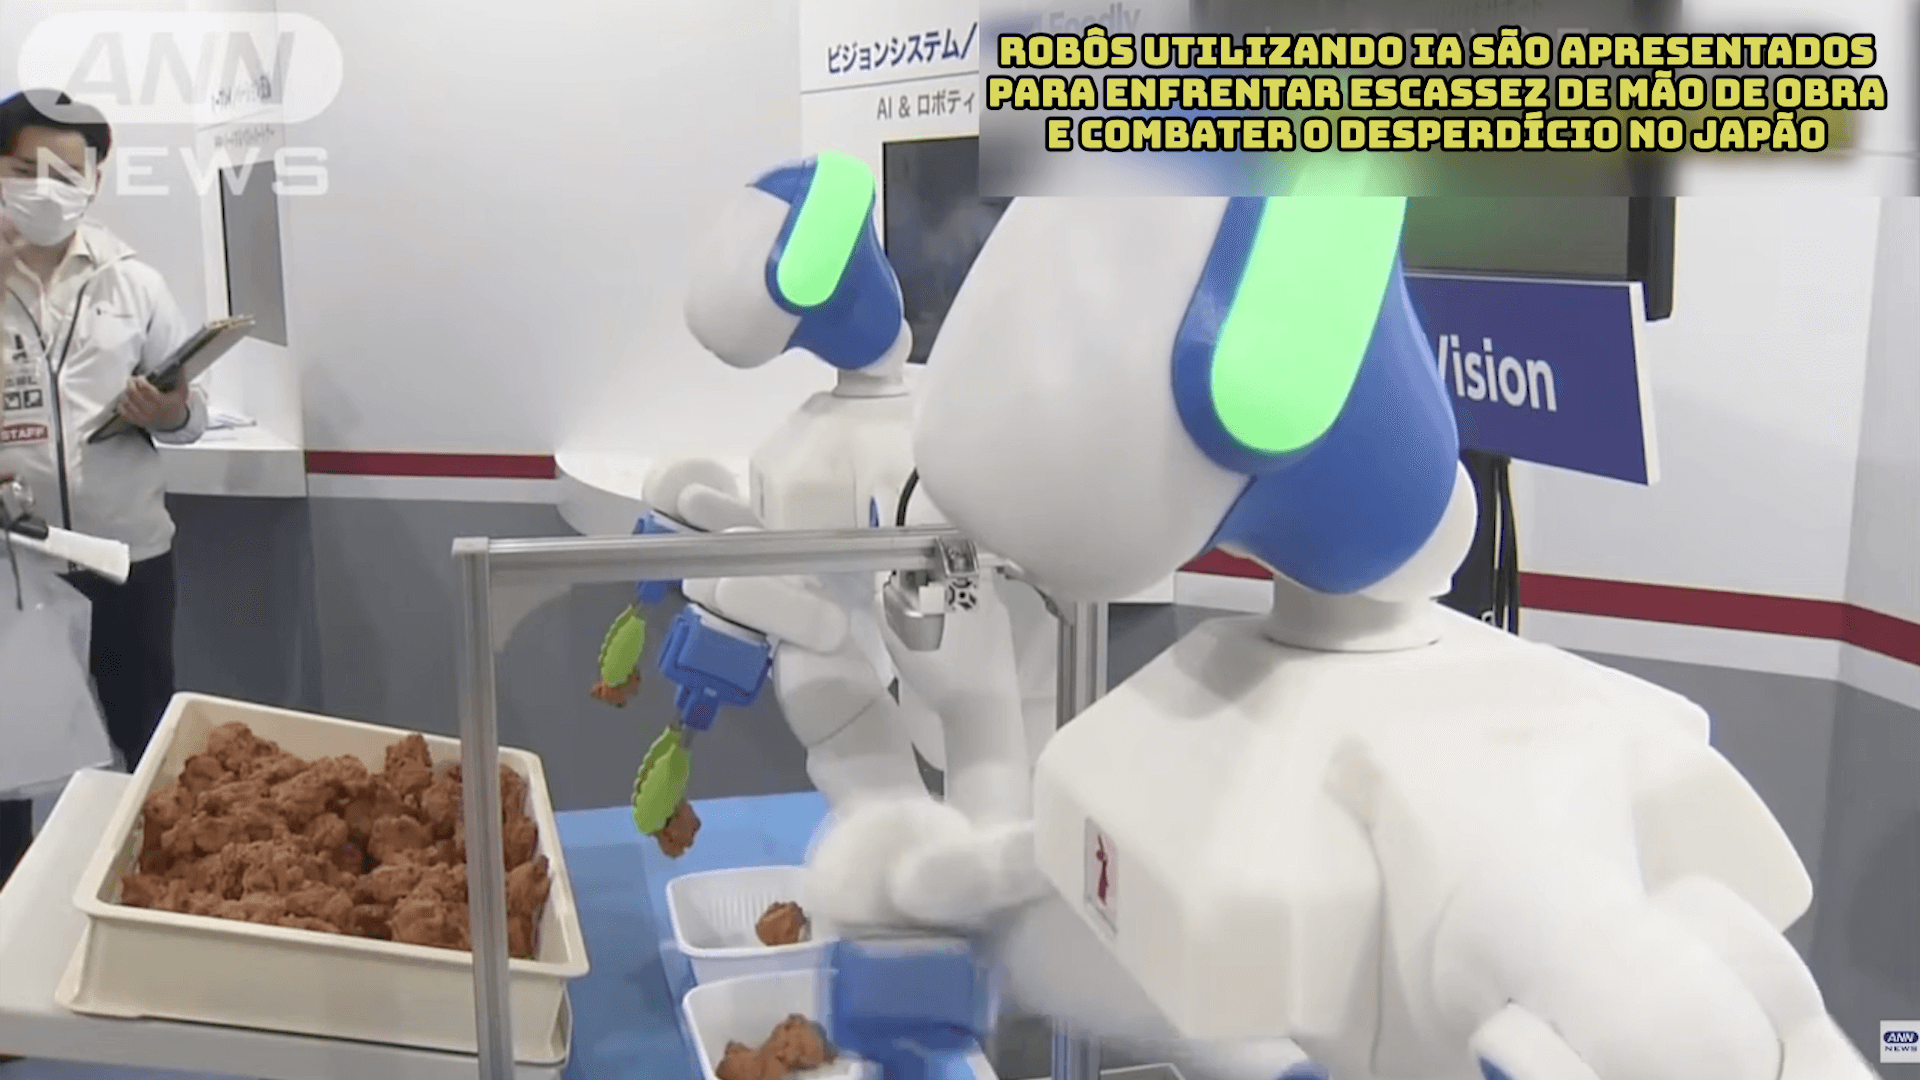 Robôs utilizando IA são apresentados para enfrentar escassez de mão de obra e combater o desperdício no Japão  